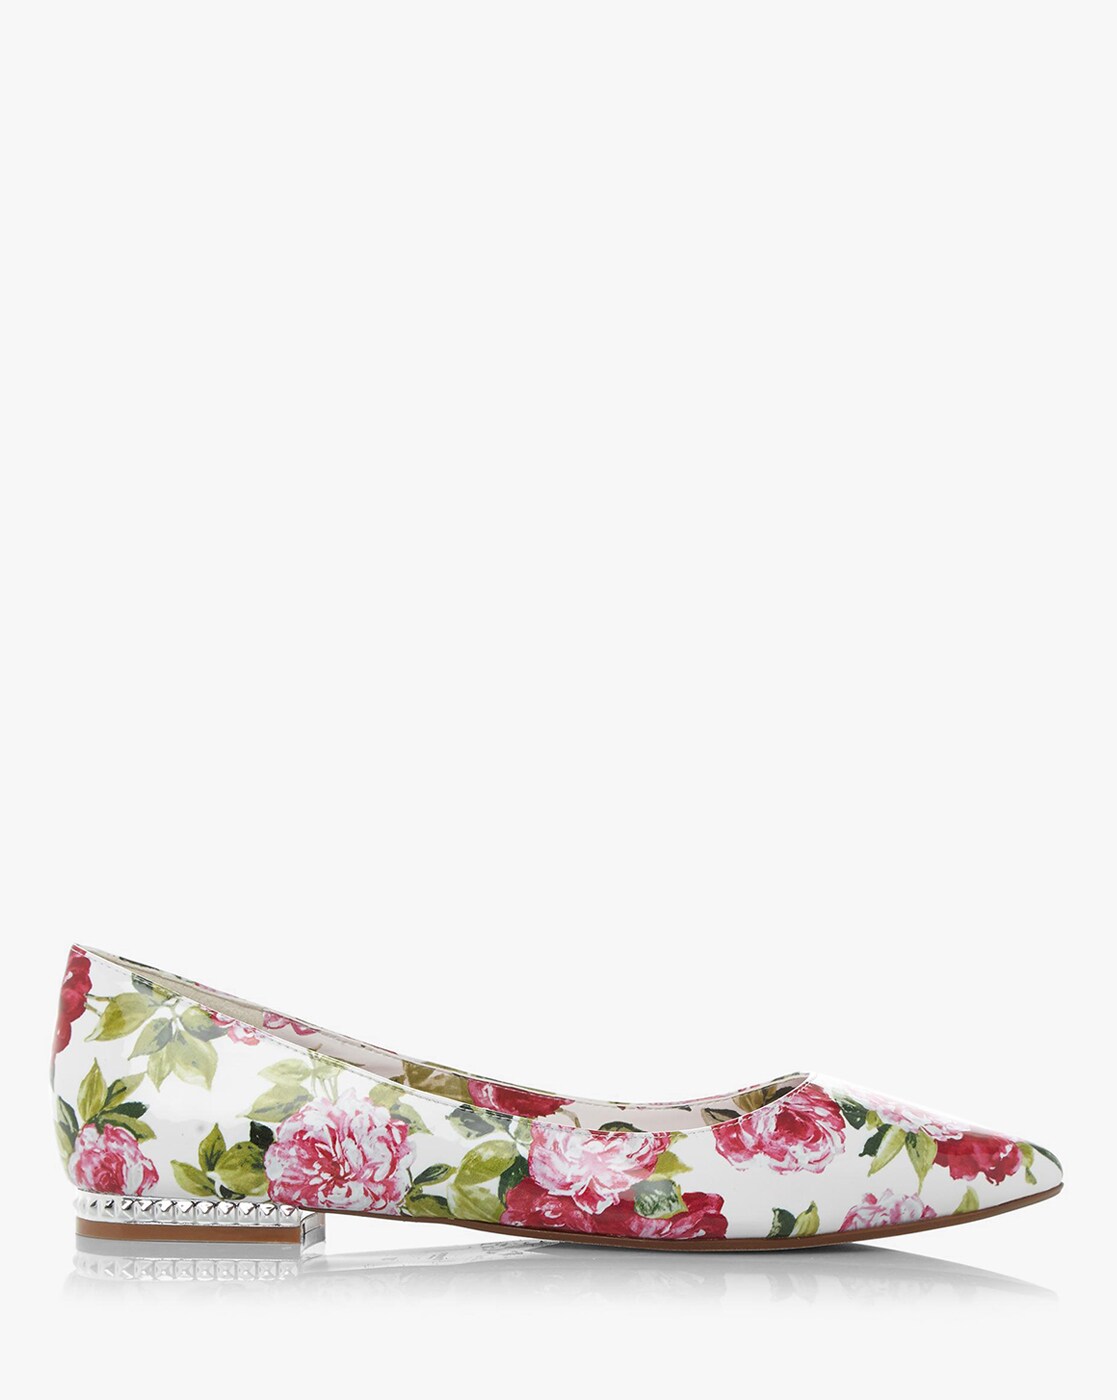 dune floral shoes